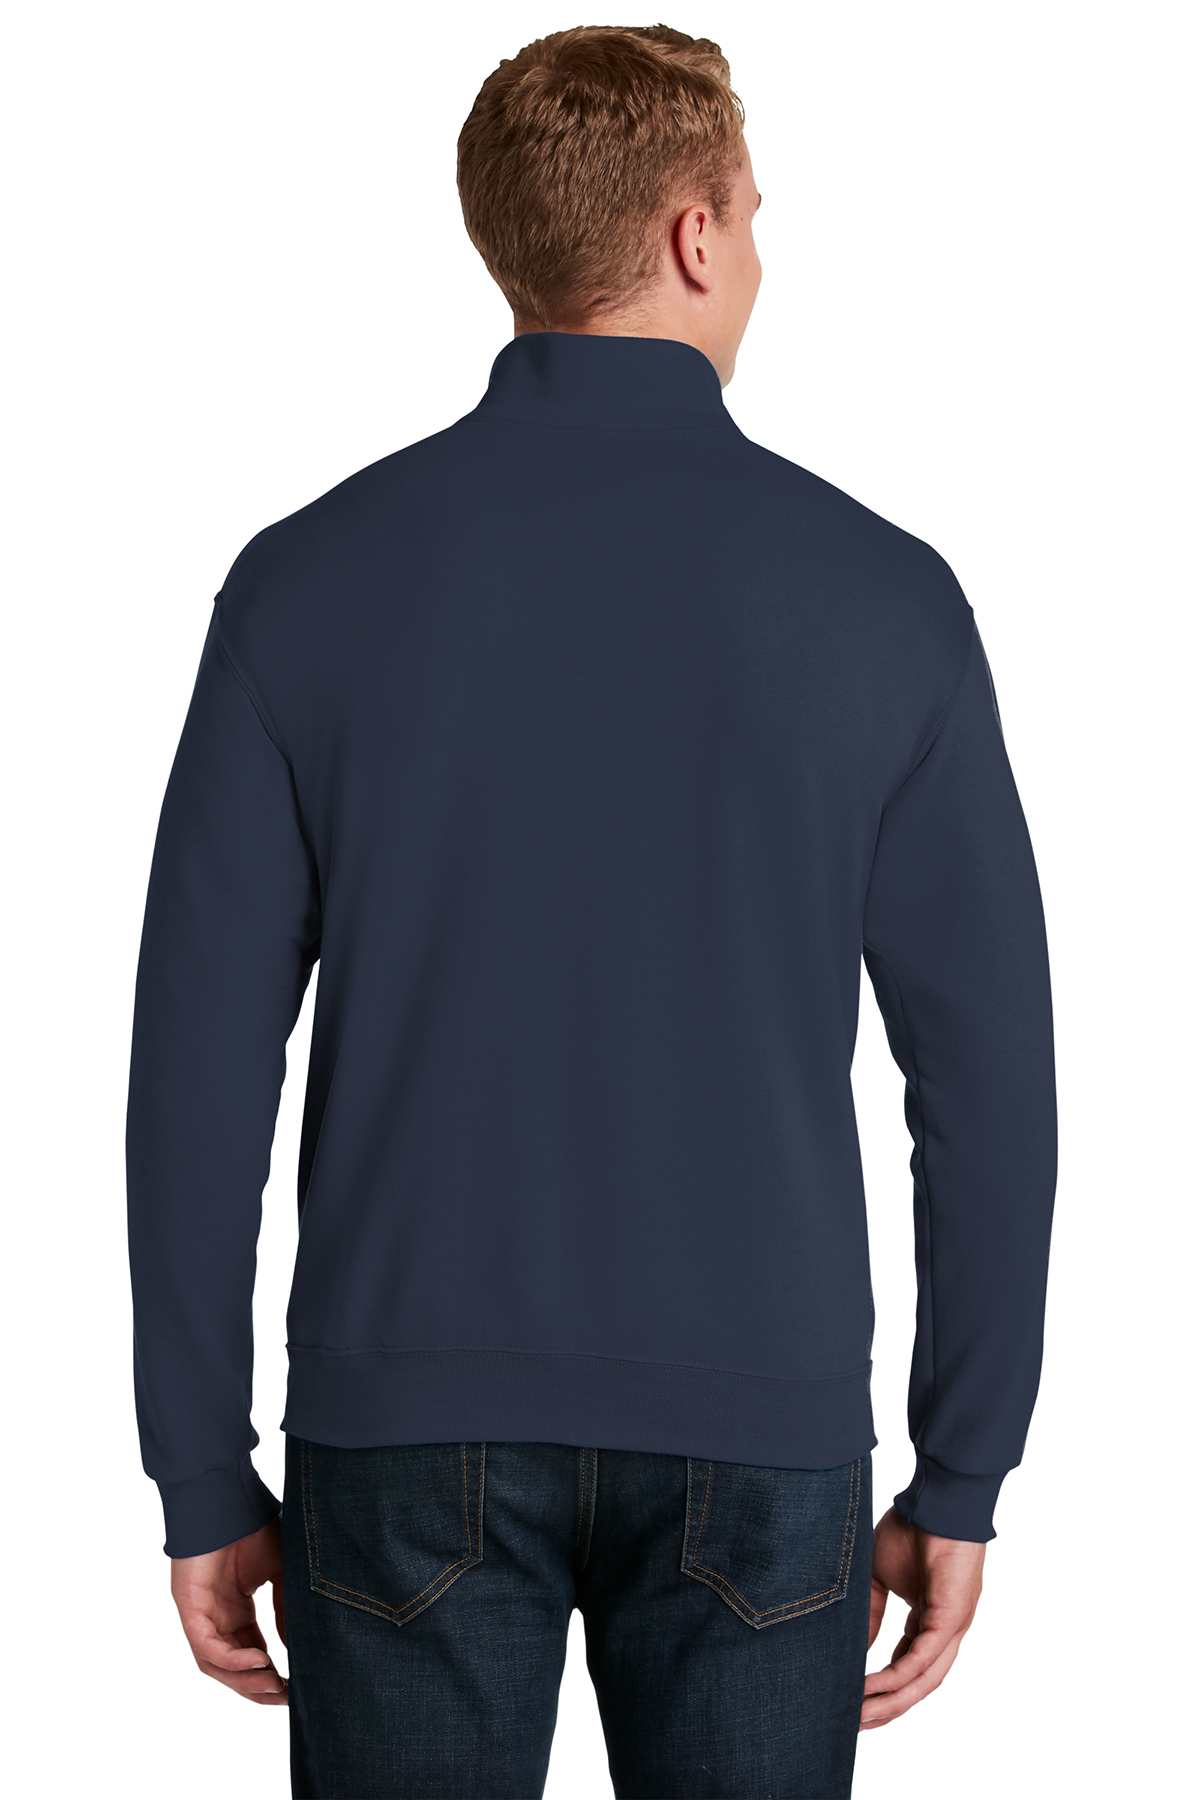 Jerzees - NuBlend 1/4-Zip Cadet Collar Sweatshirt | Product | SanMar | Sweatshirts